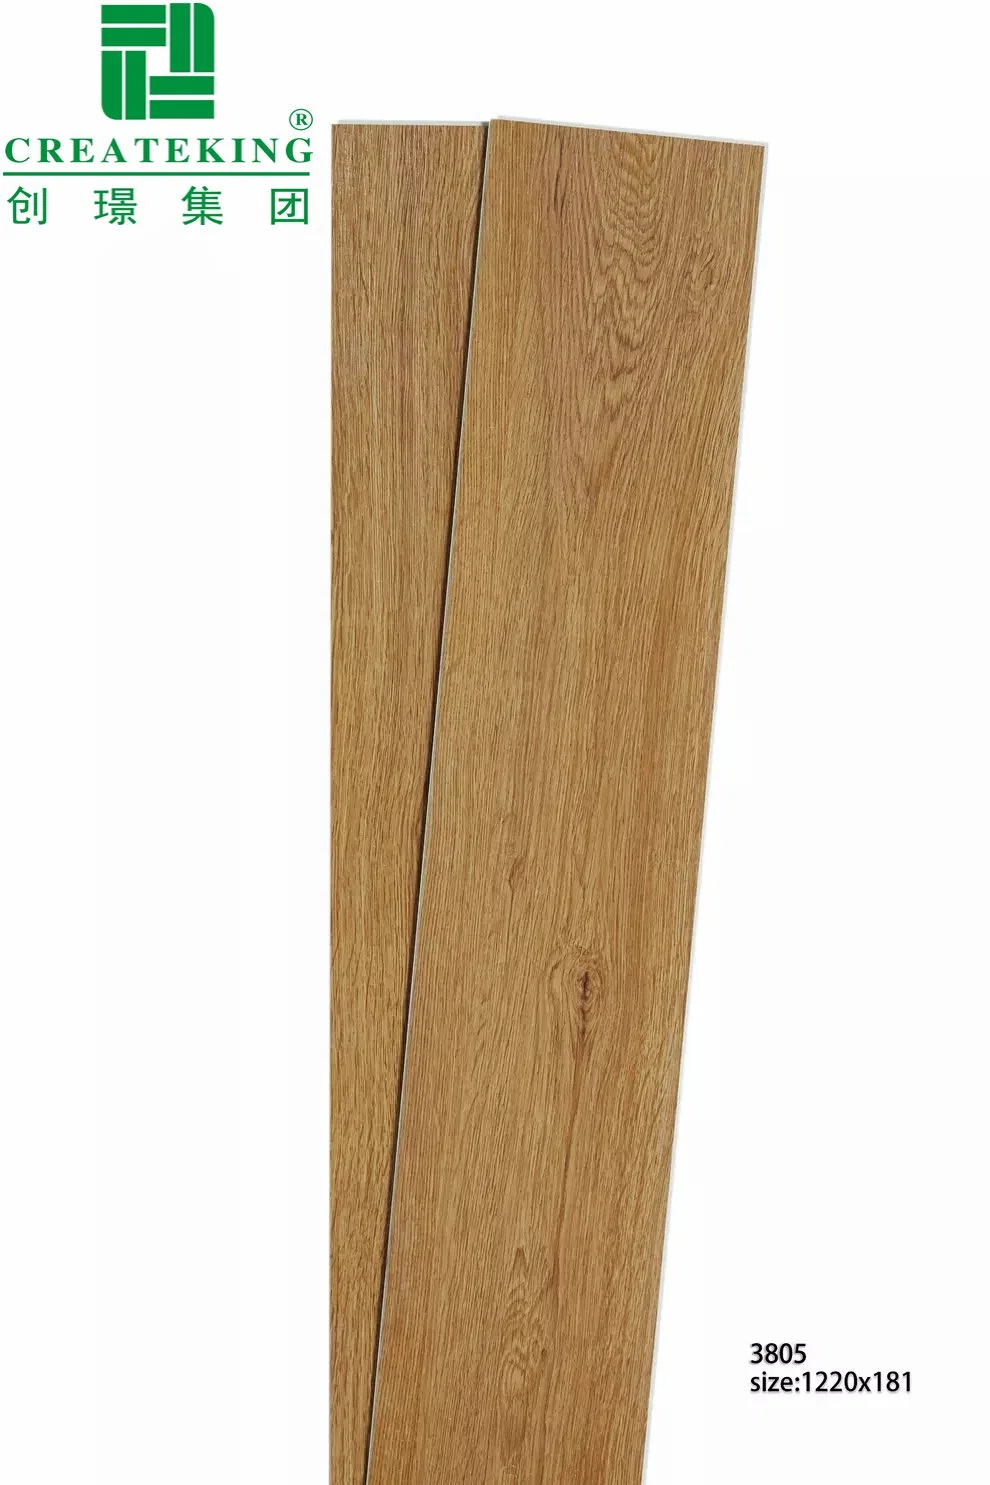 El roble y nogal madera Chapa de madera de abedul/Spc pisos de vinilo Cepillado de alambre de barniz UV